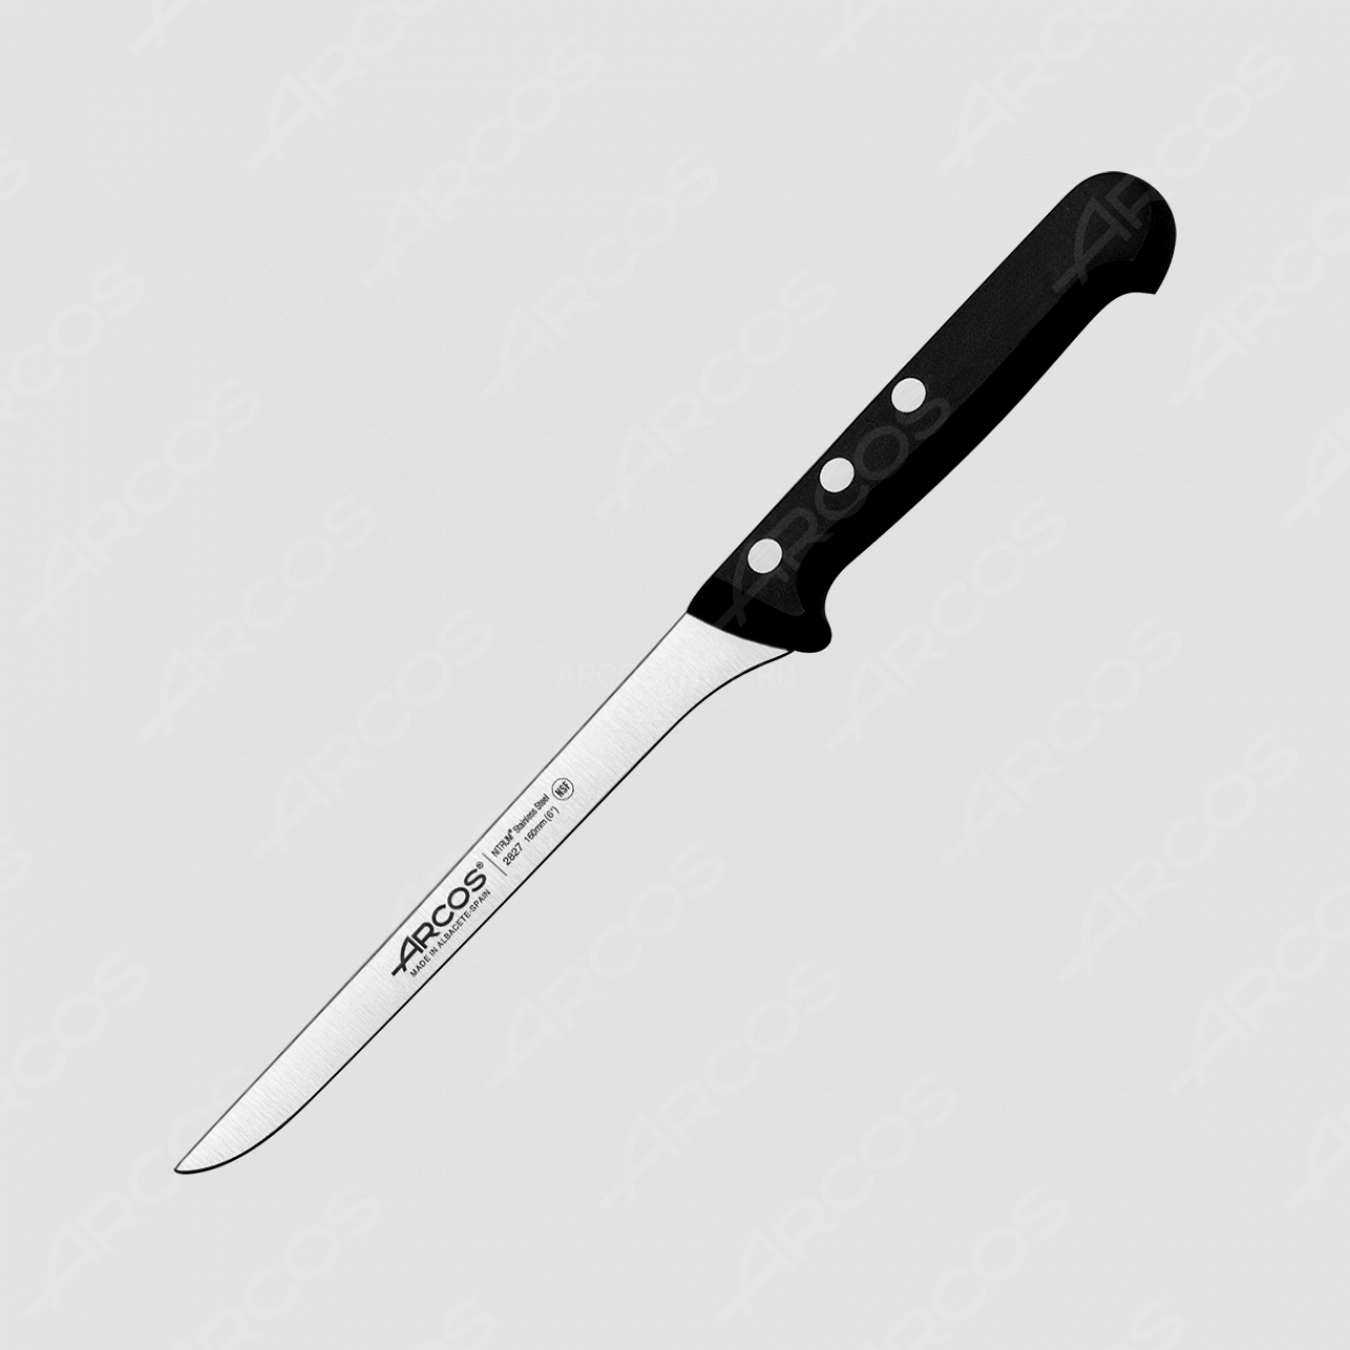 Нож кухонный филейный 16 см, серия Universal, ARCOS, Испания